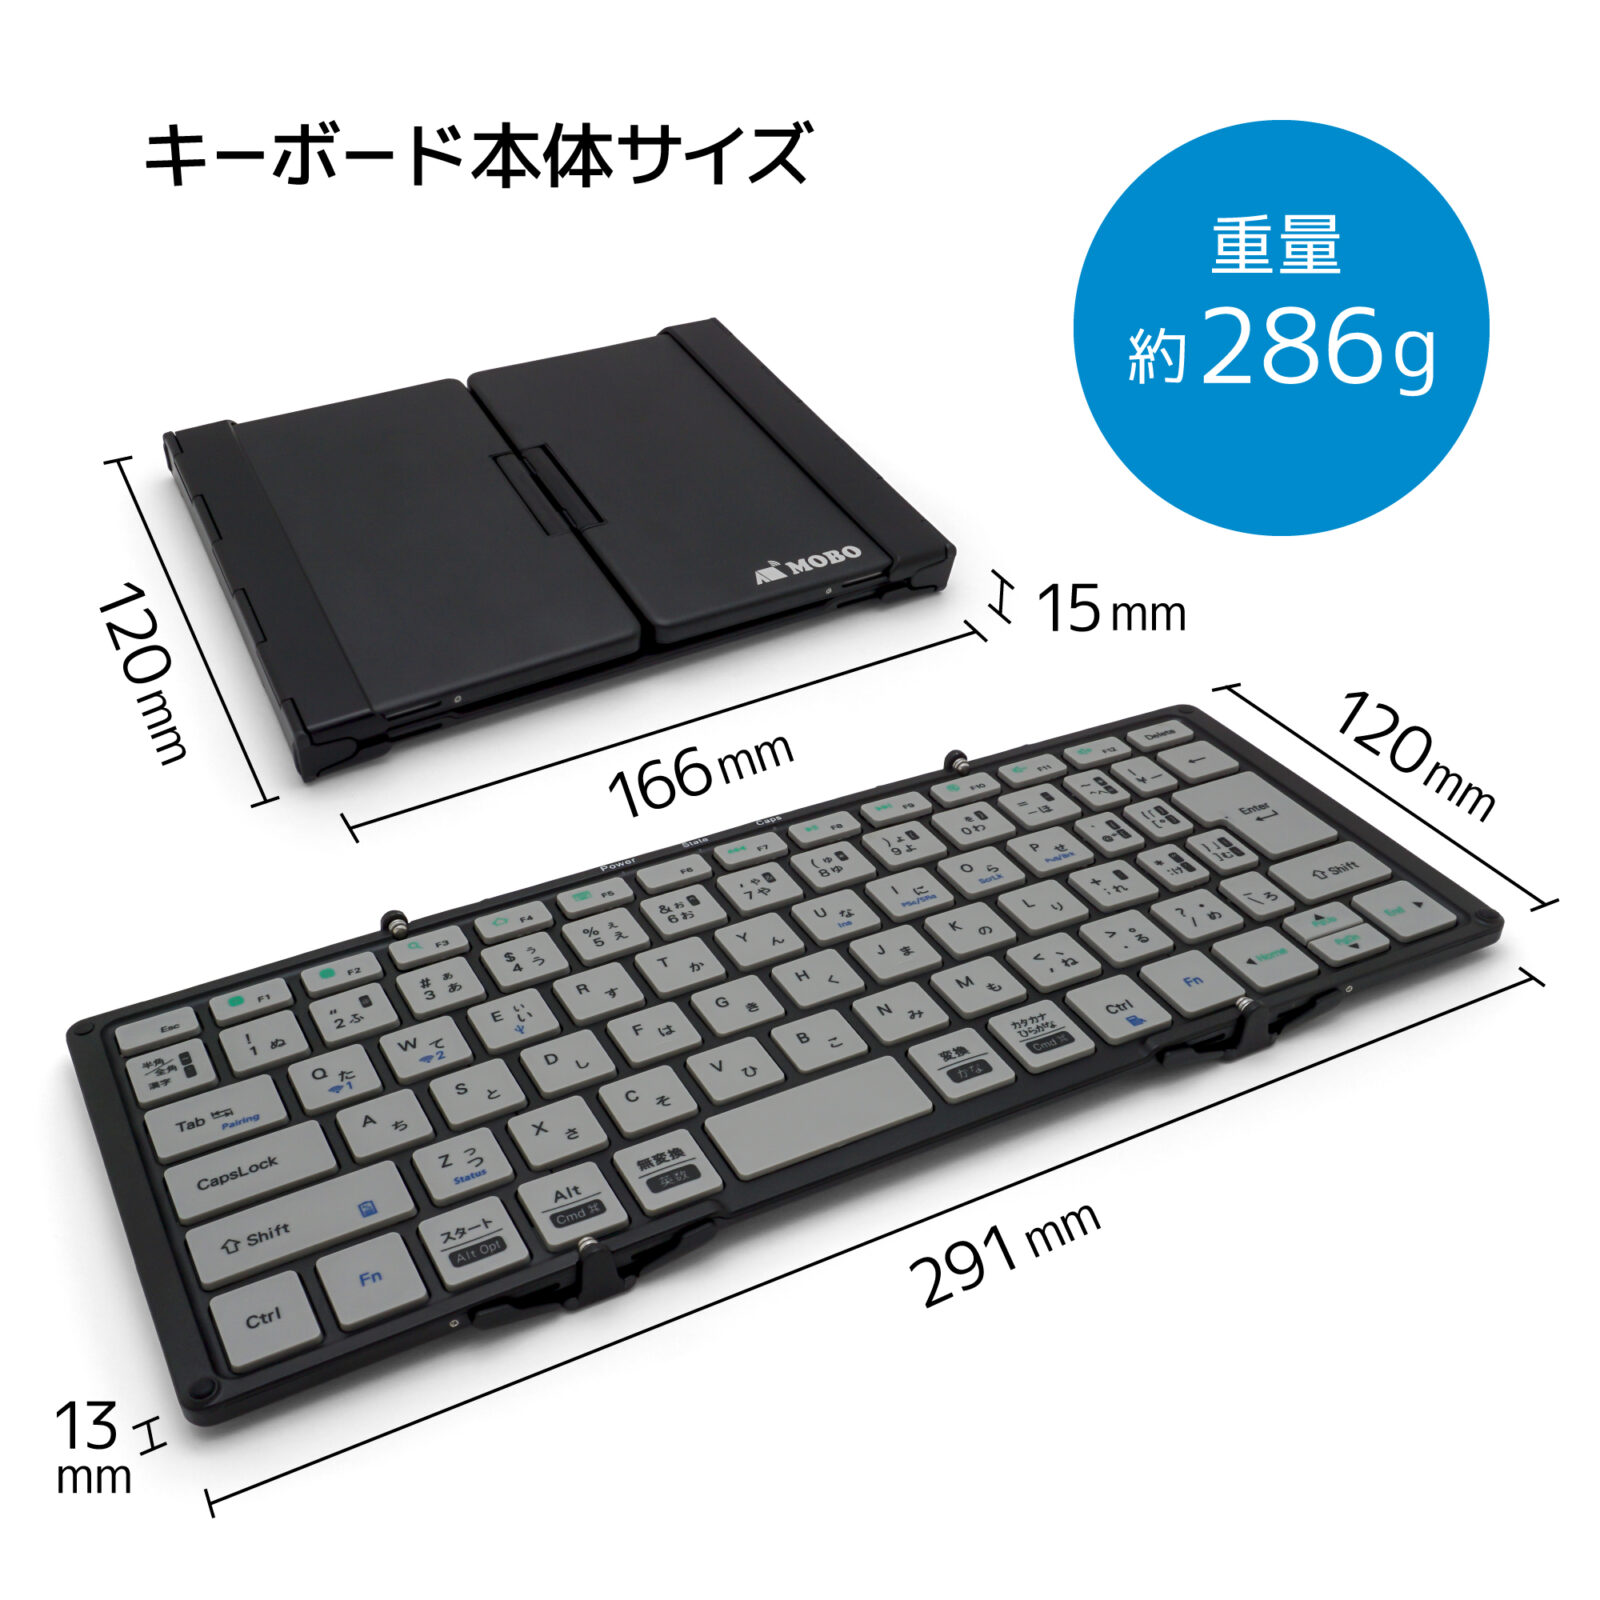 MOBO Keyboard 2 | MOBO